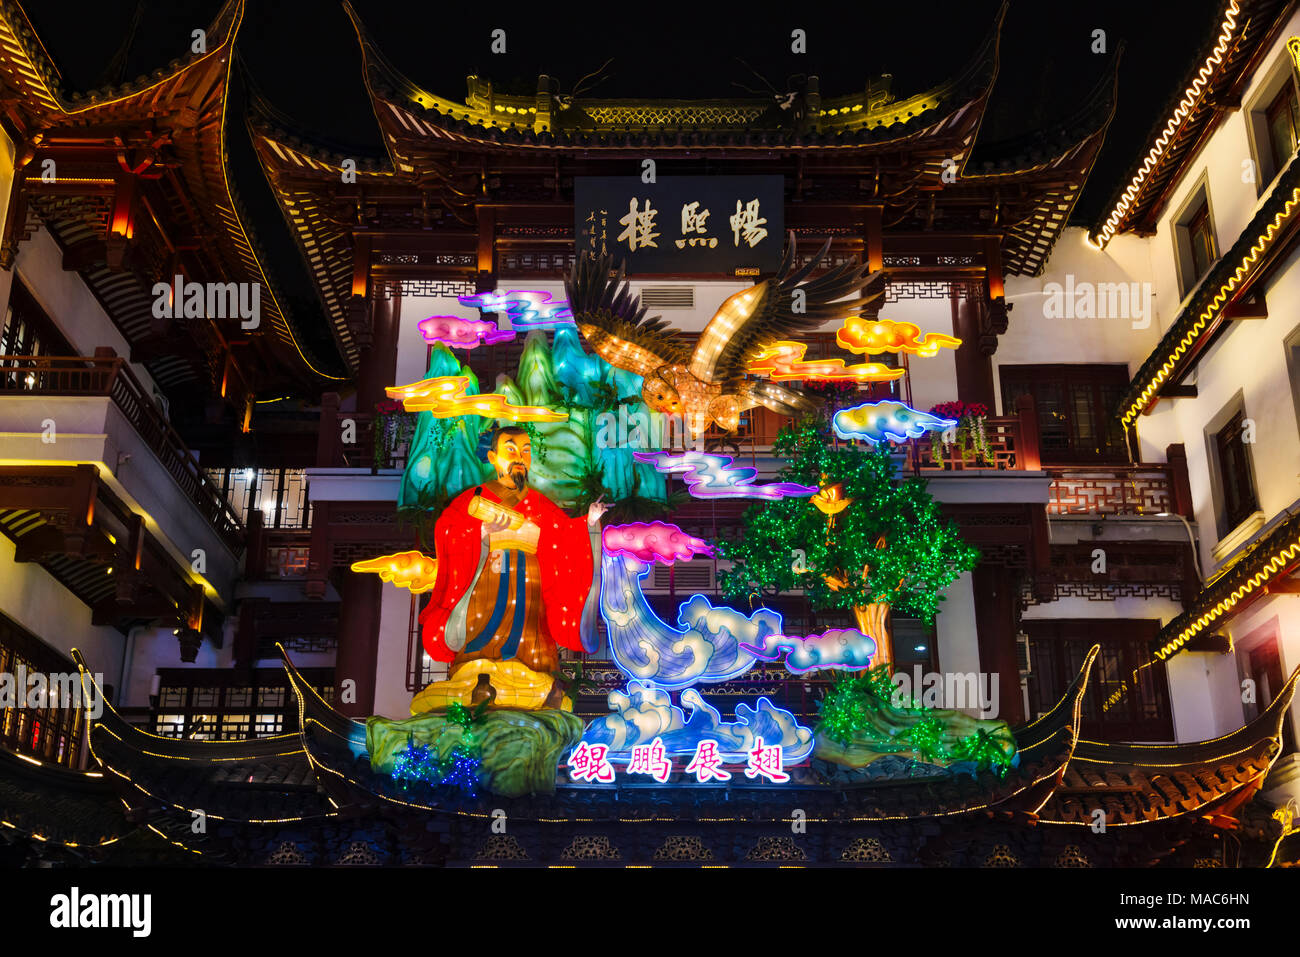 Luci colorate a festa delle lanterne per celebrare il capodanno cinese in Il Giardino di Yuyuan, Shanghai, Cina Foto Stock